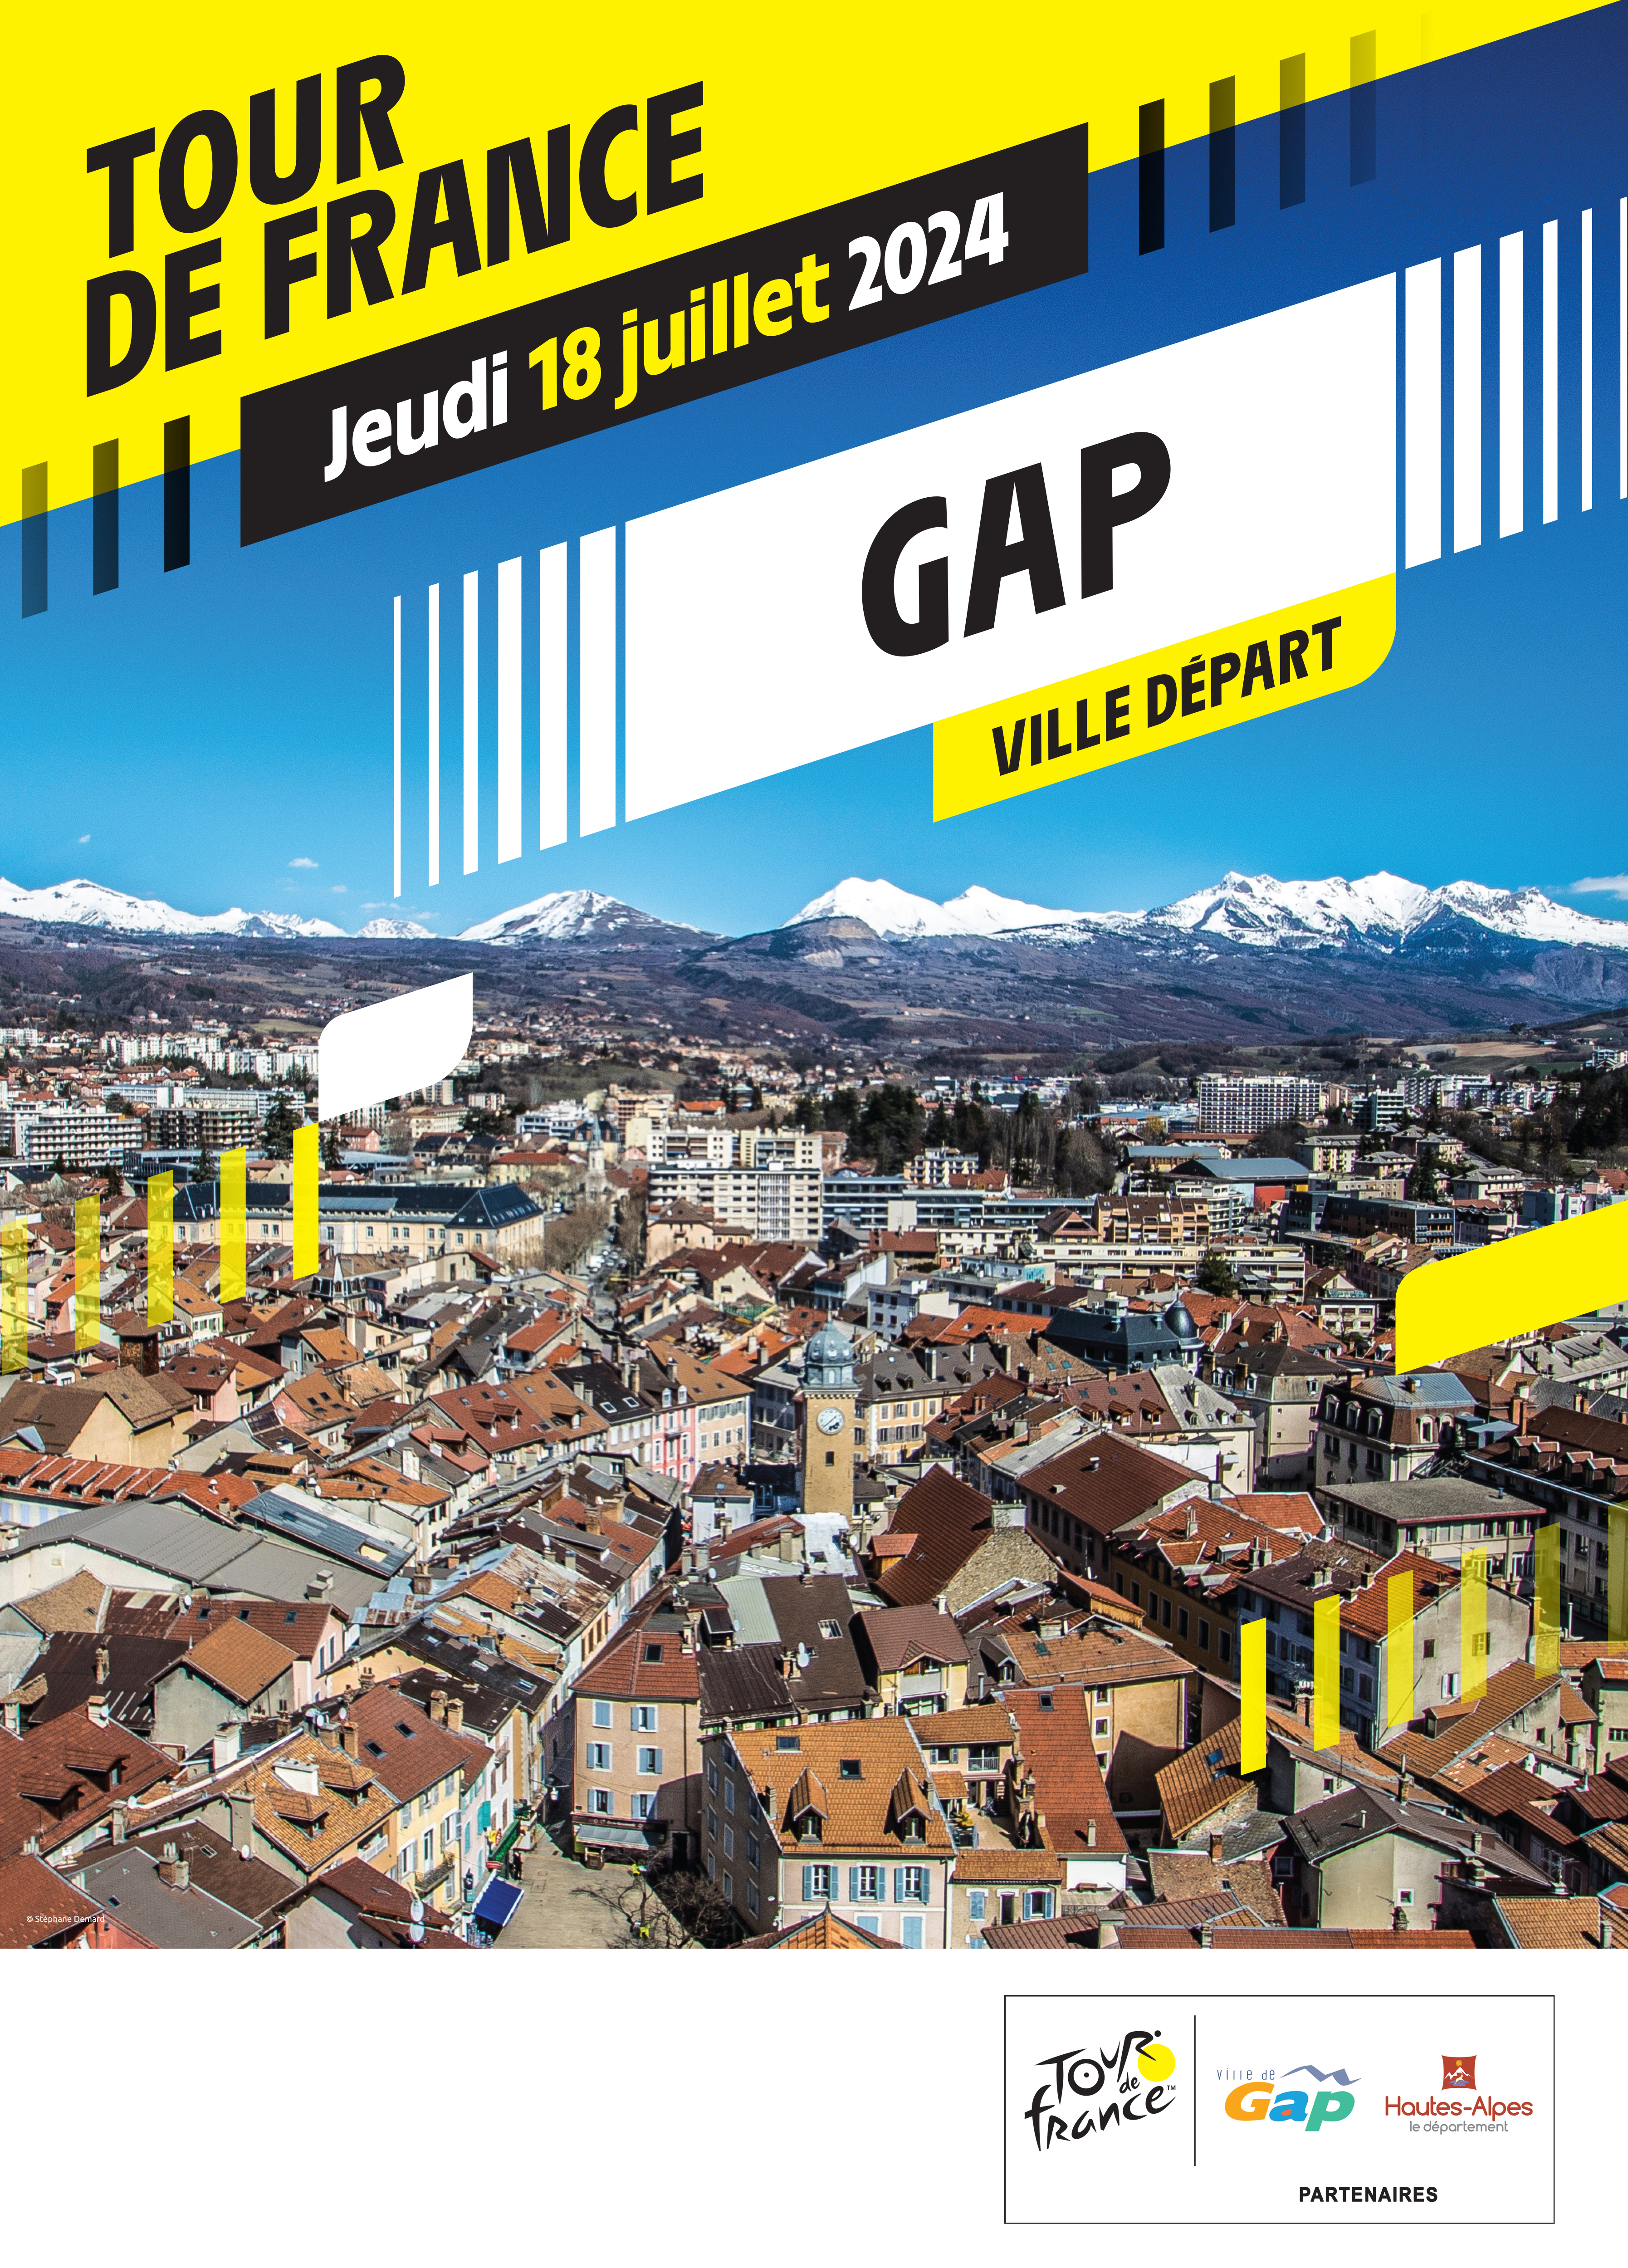 Tour de France - Gap ville passage le 17 et ville depart le 18 juillet 2024